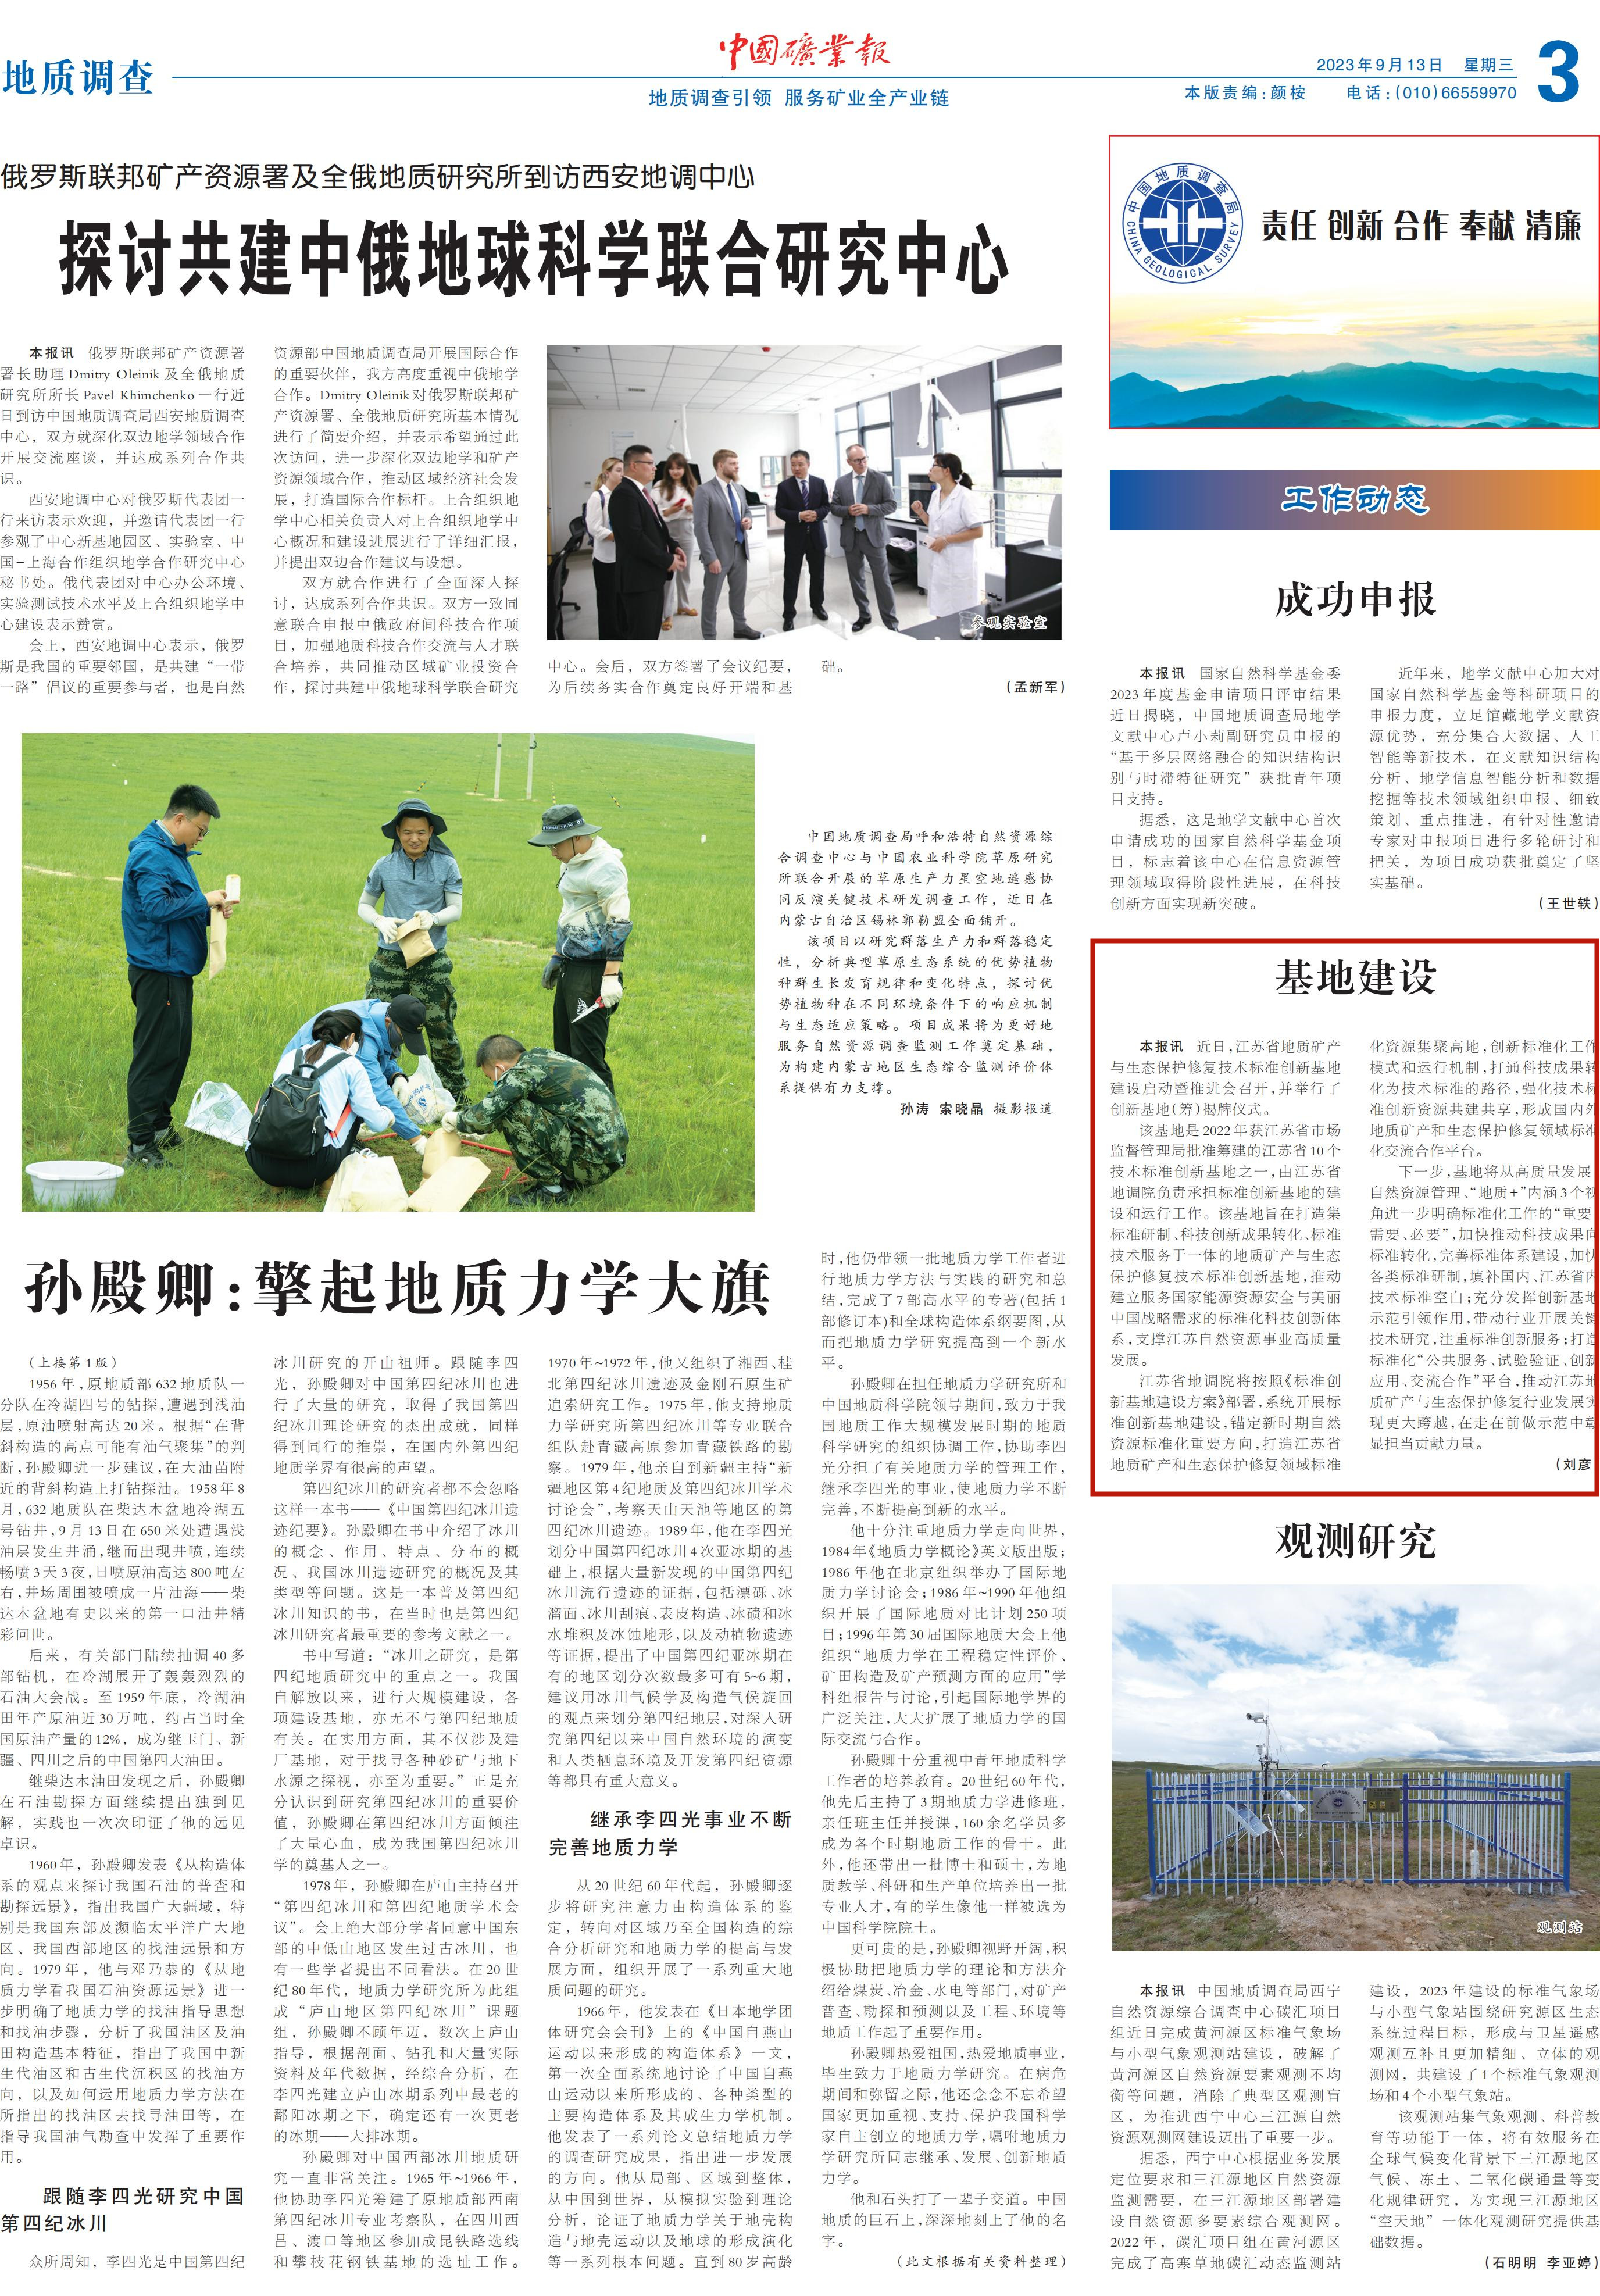 《中国矿业报》报道我院江苏省地质矿产与生态保护修复技术标准创新基地建设启动